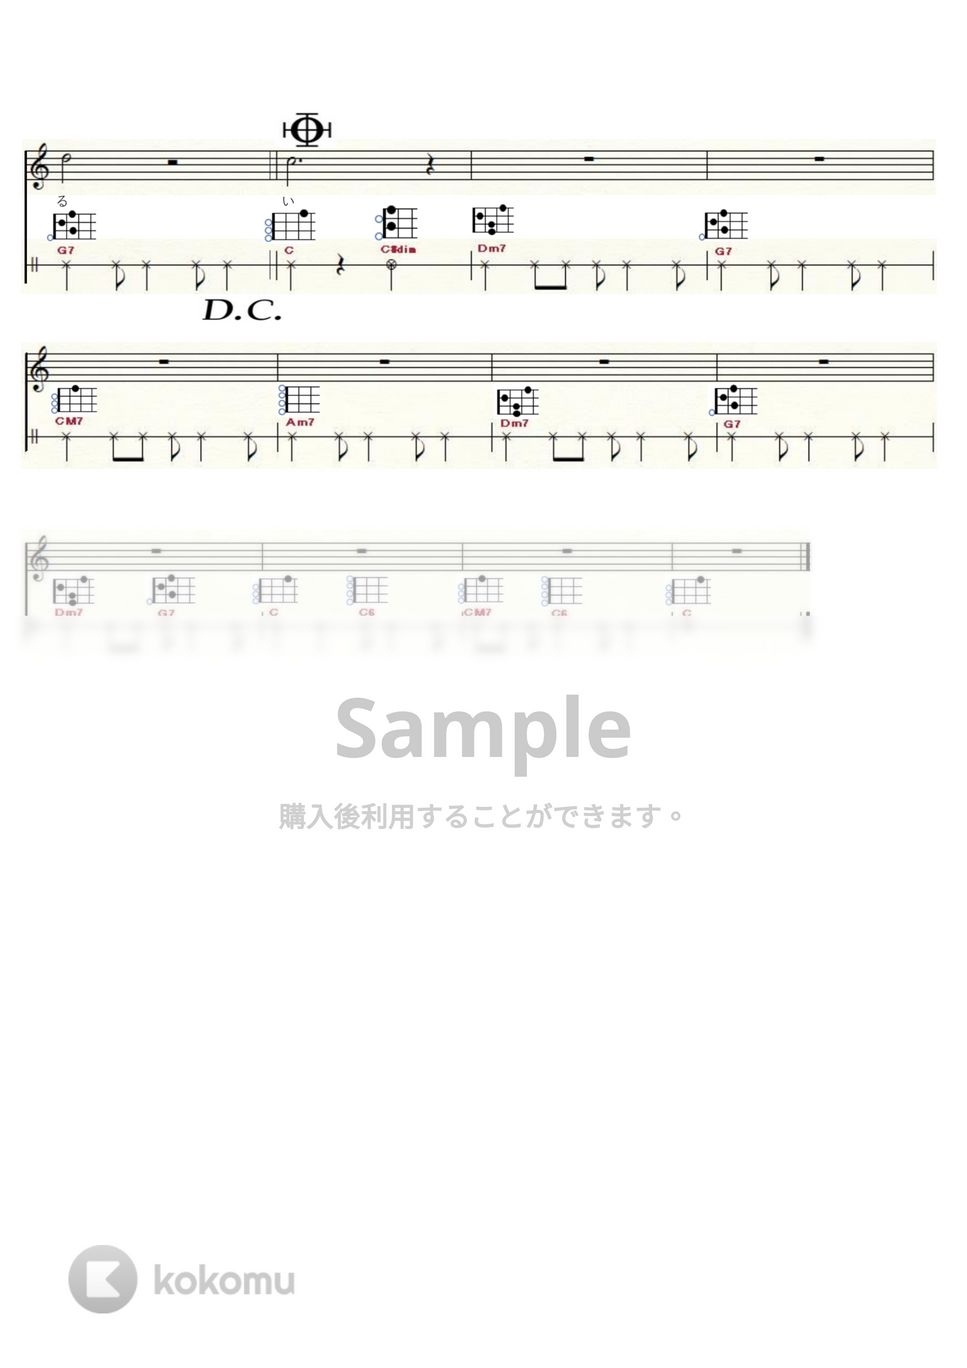 夢で逢えたら - 夢で逢えたら (ｳｸﾚﾚ弾き語り / High-G,Low-G) by ukulelepapa